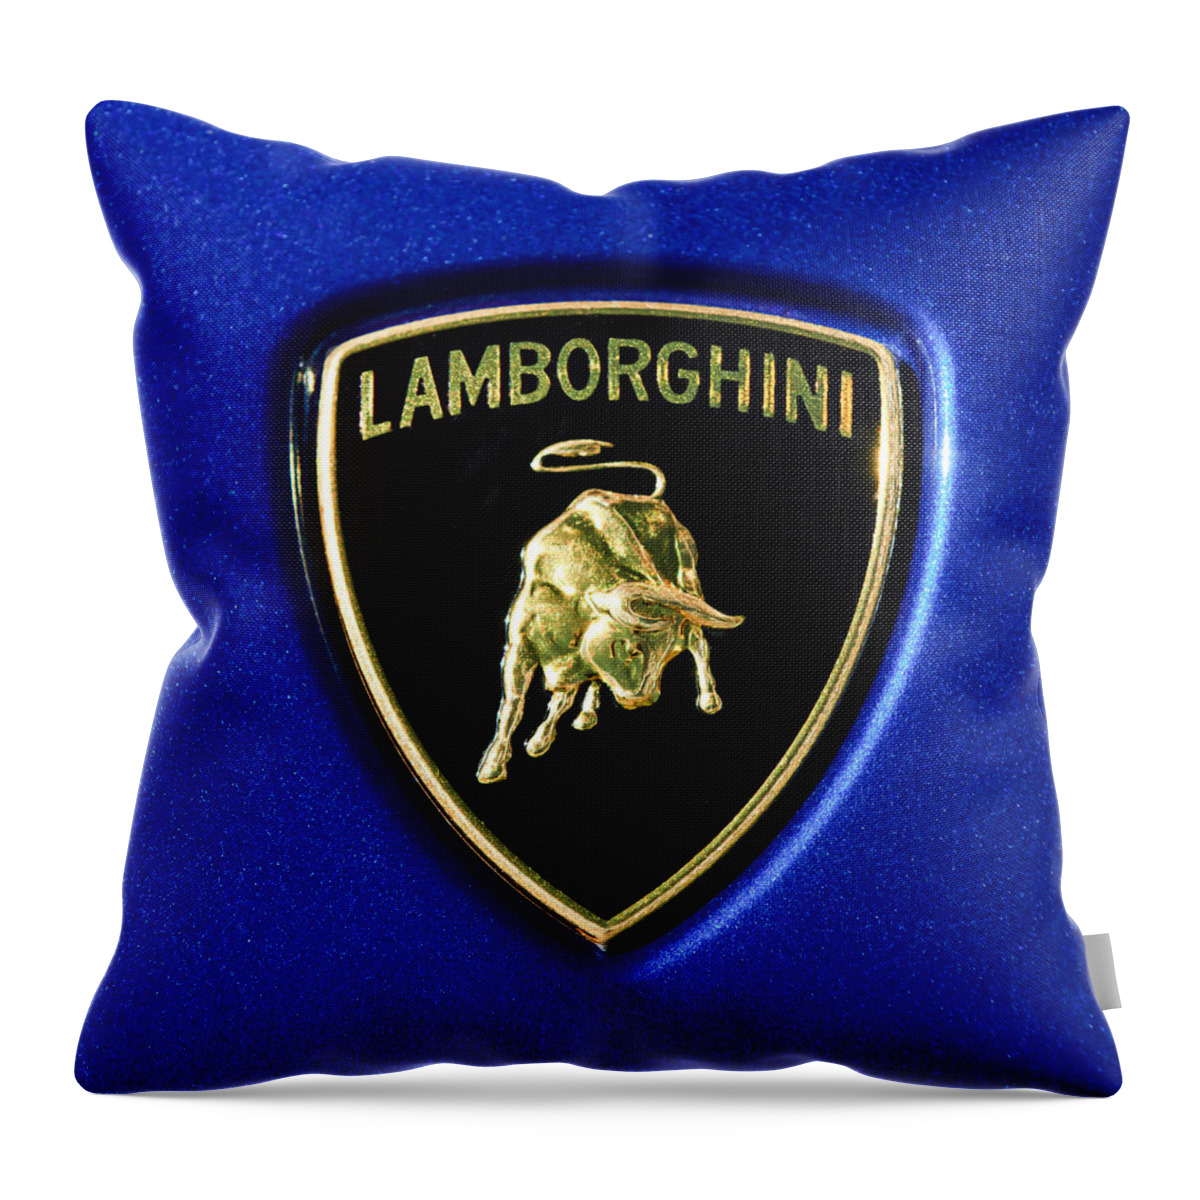 Lamborghini Emblem Throw Pillow featuring the photograph Lamborghini Emblem #3 by Jill Reger